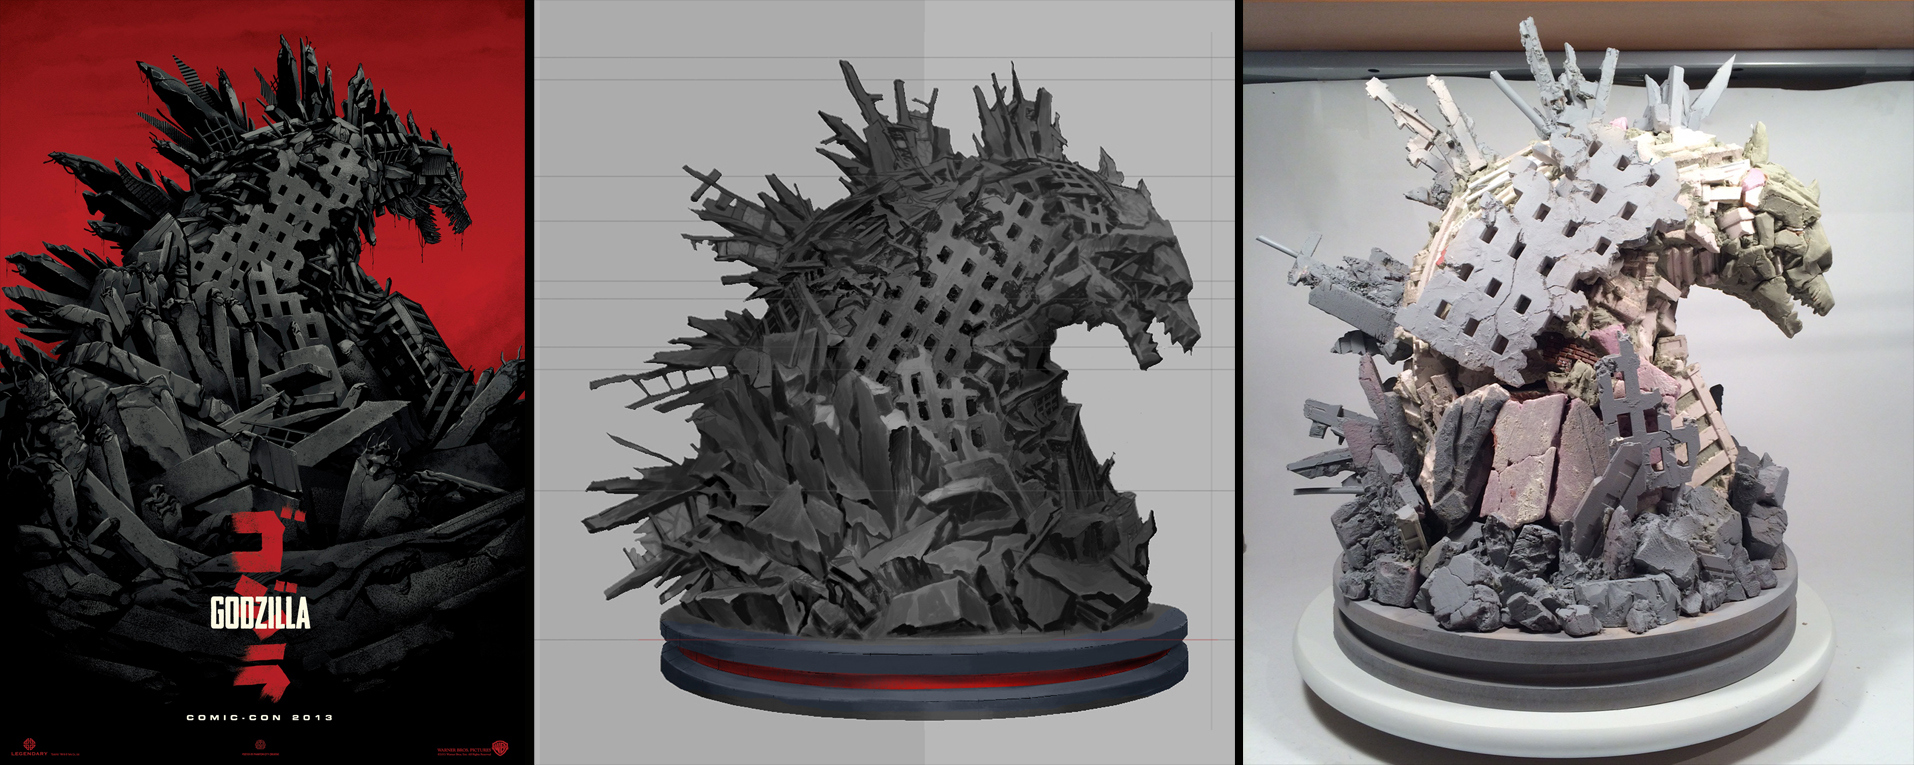 Godzilla_Sculpture-Progression.jpeg